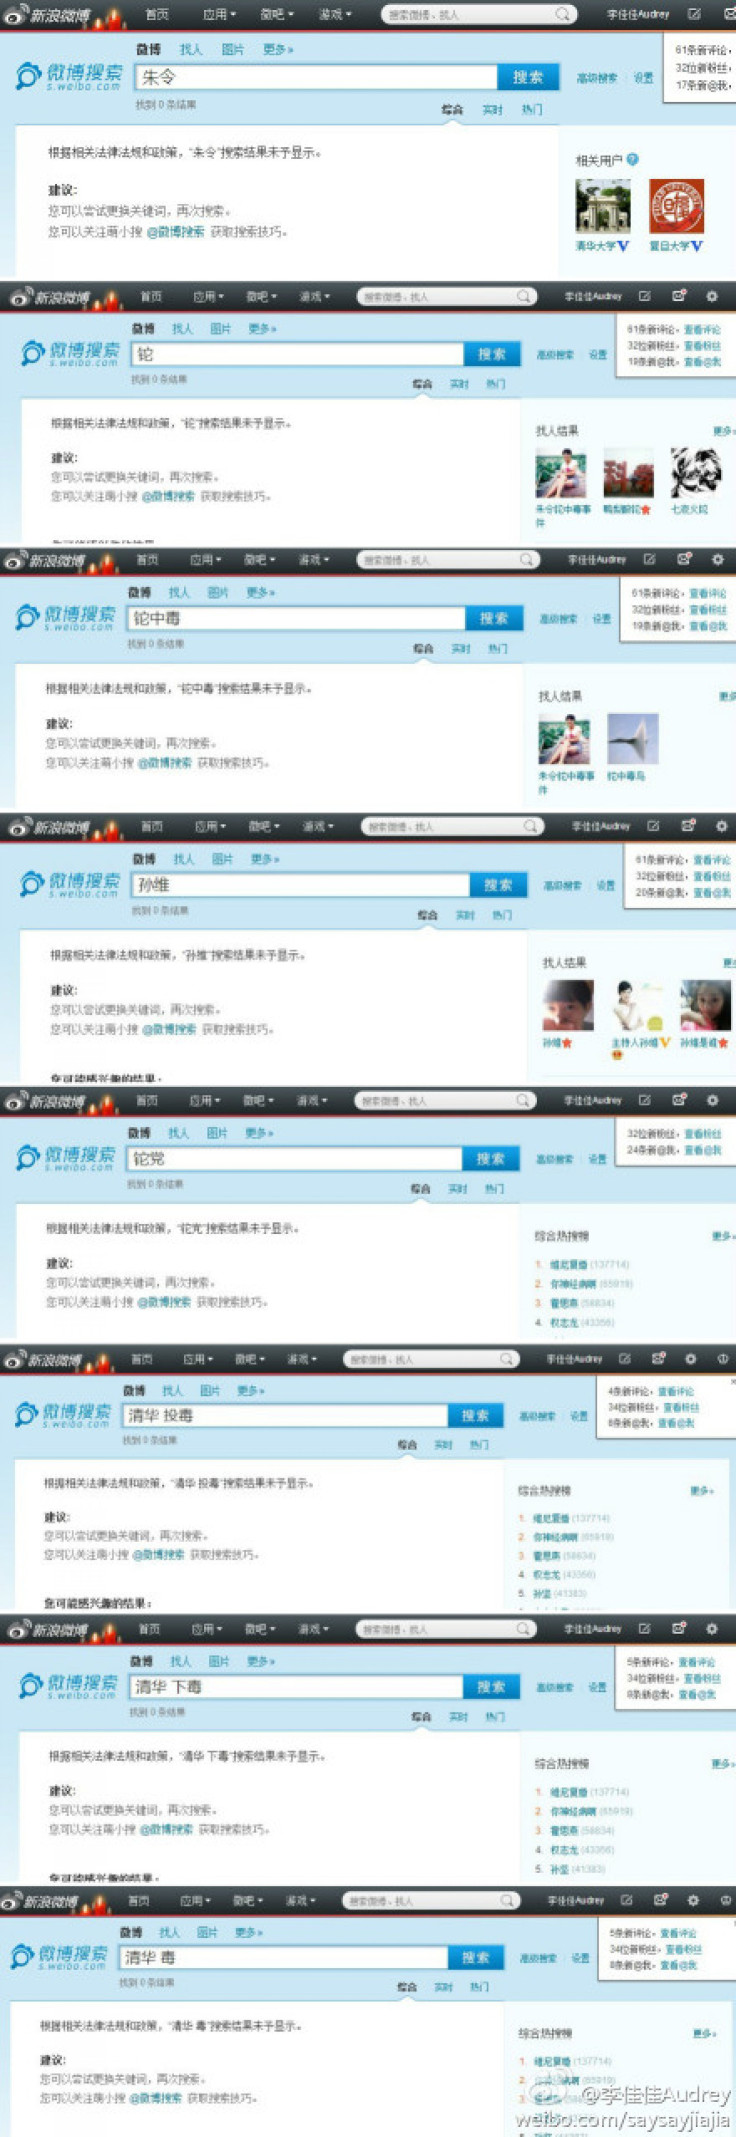 Zhu Ling Blocked On Weibo